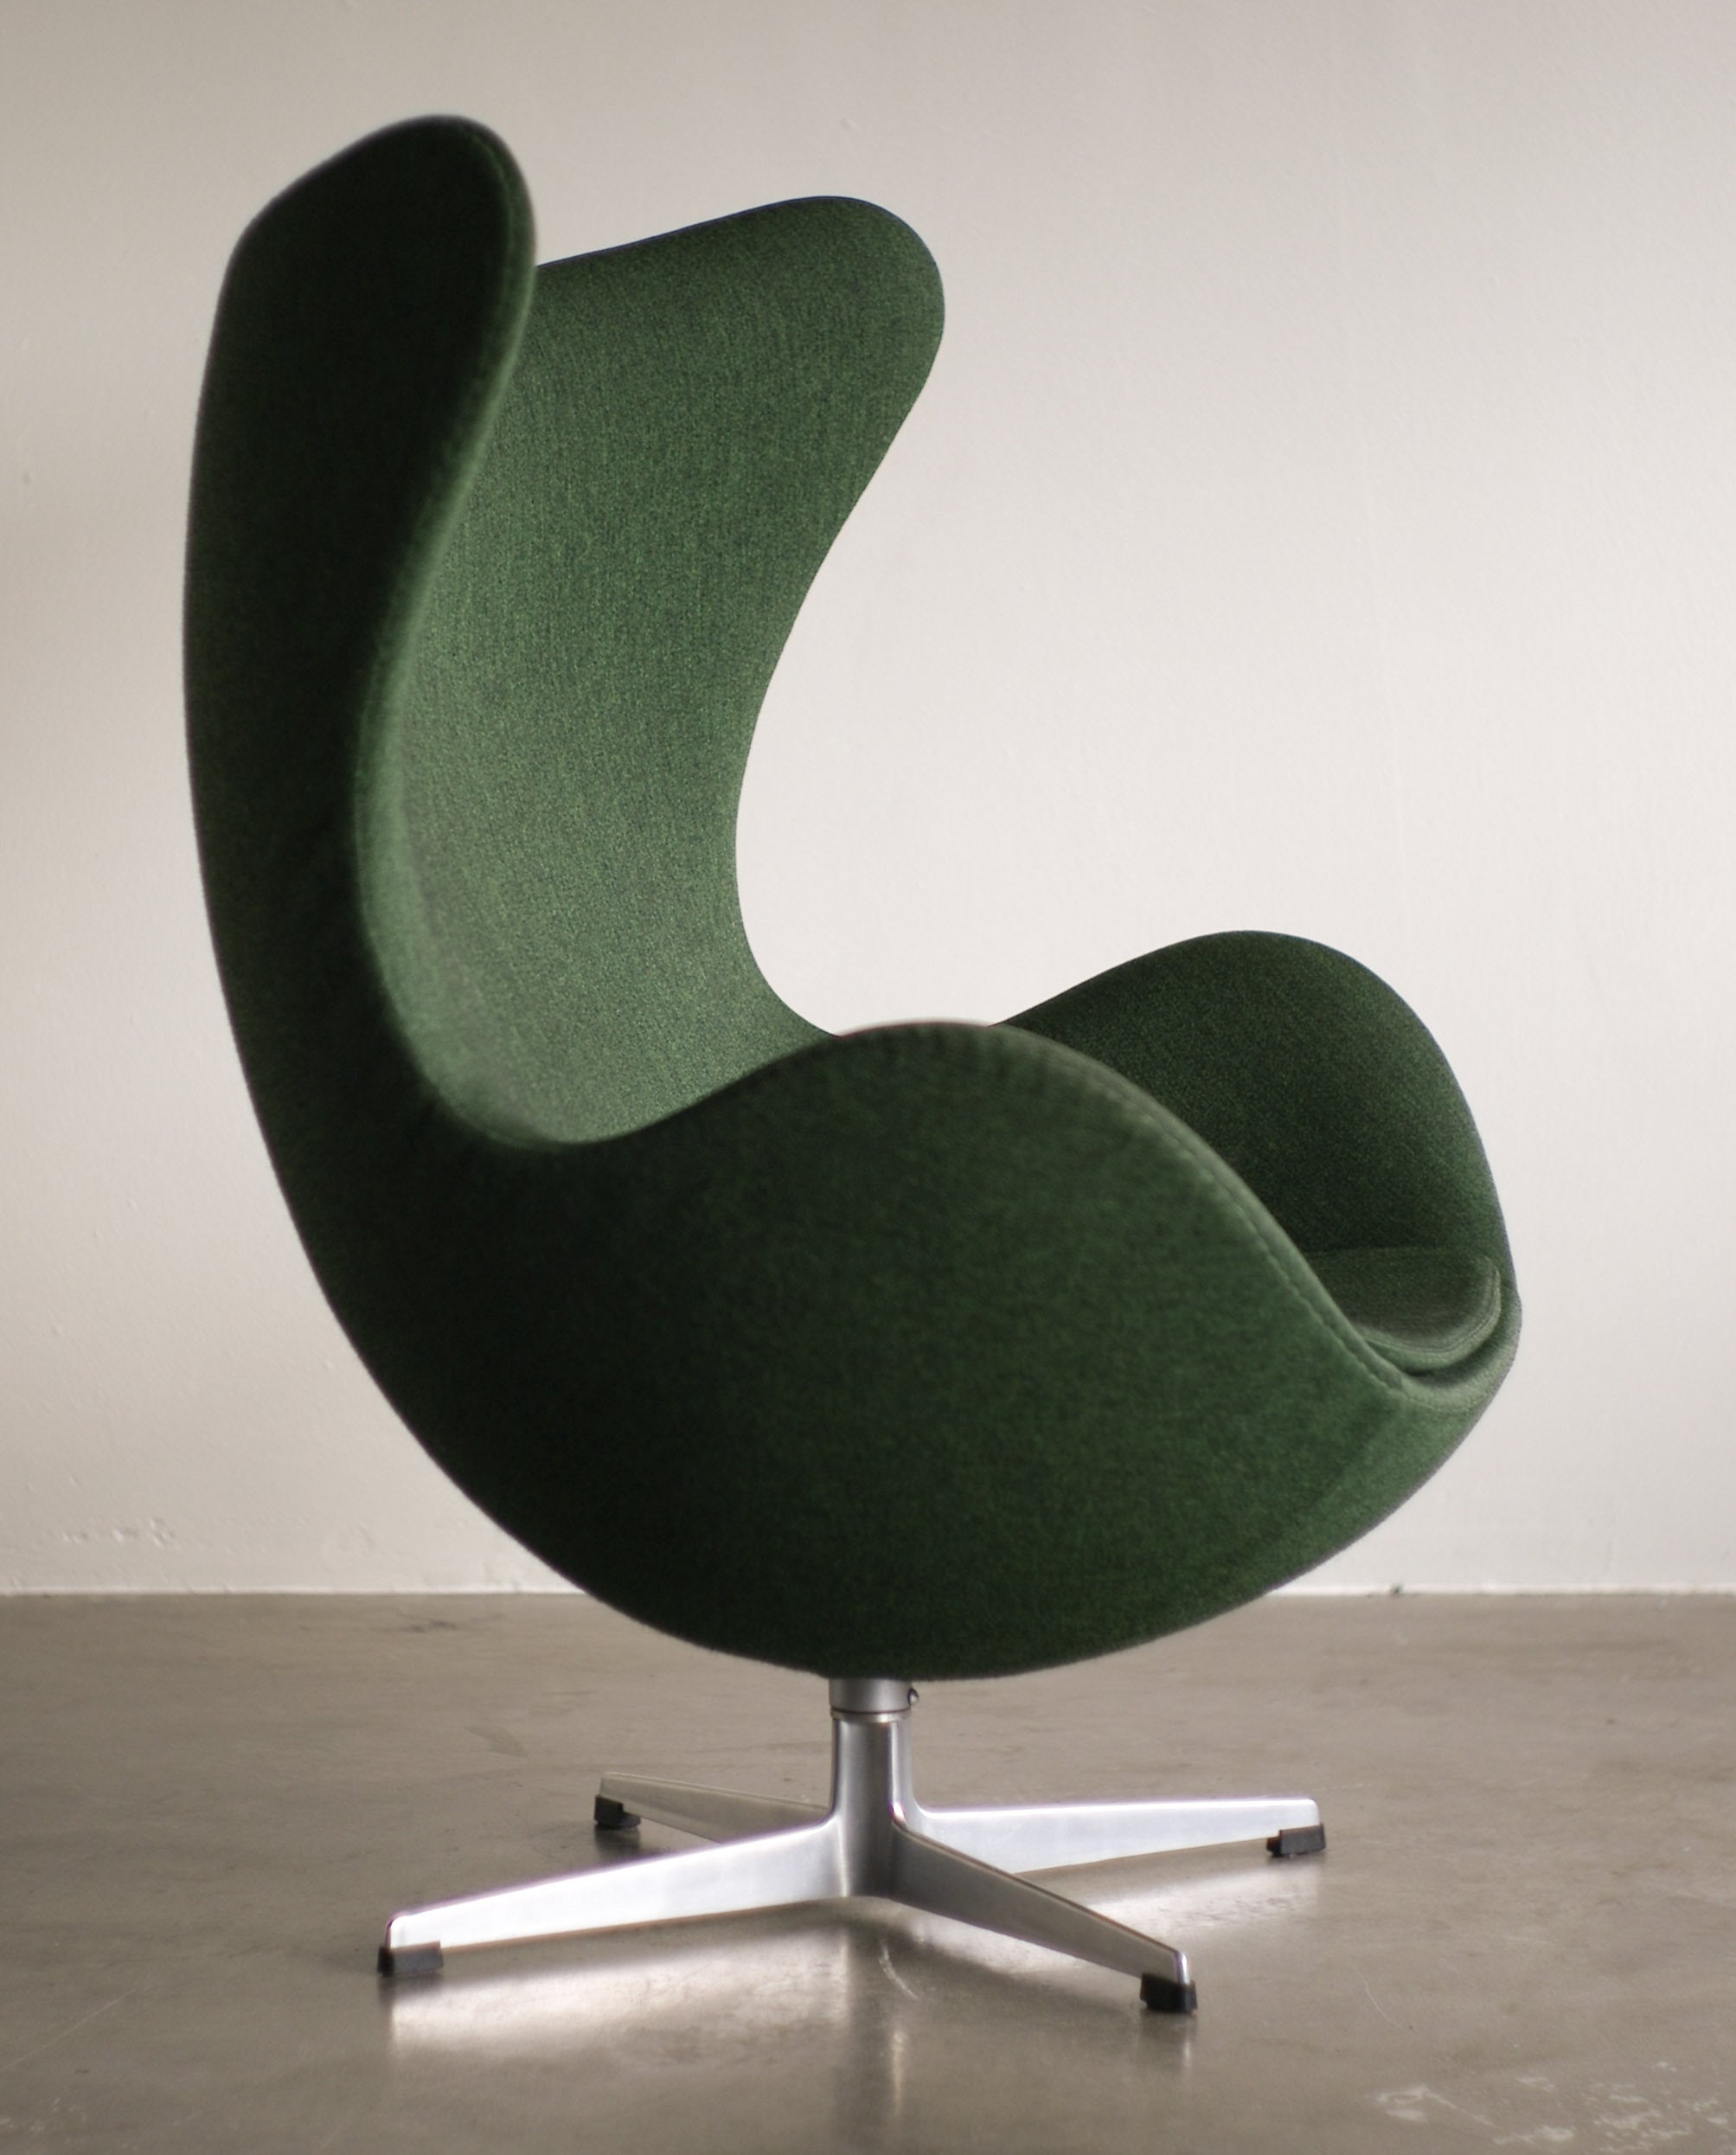 1960's Arne Jacobsen Egg Chair in original vintage 2-tone green wool.